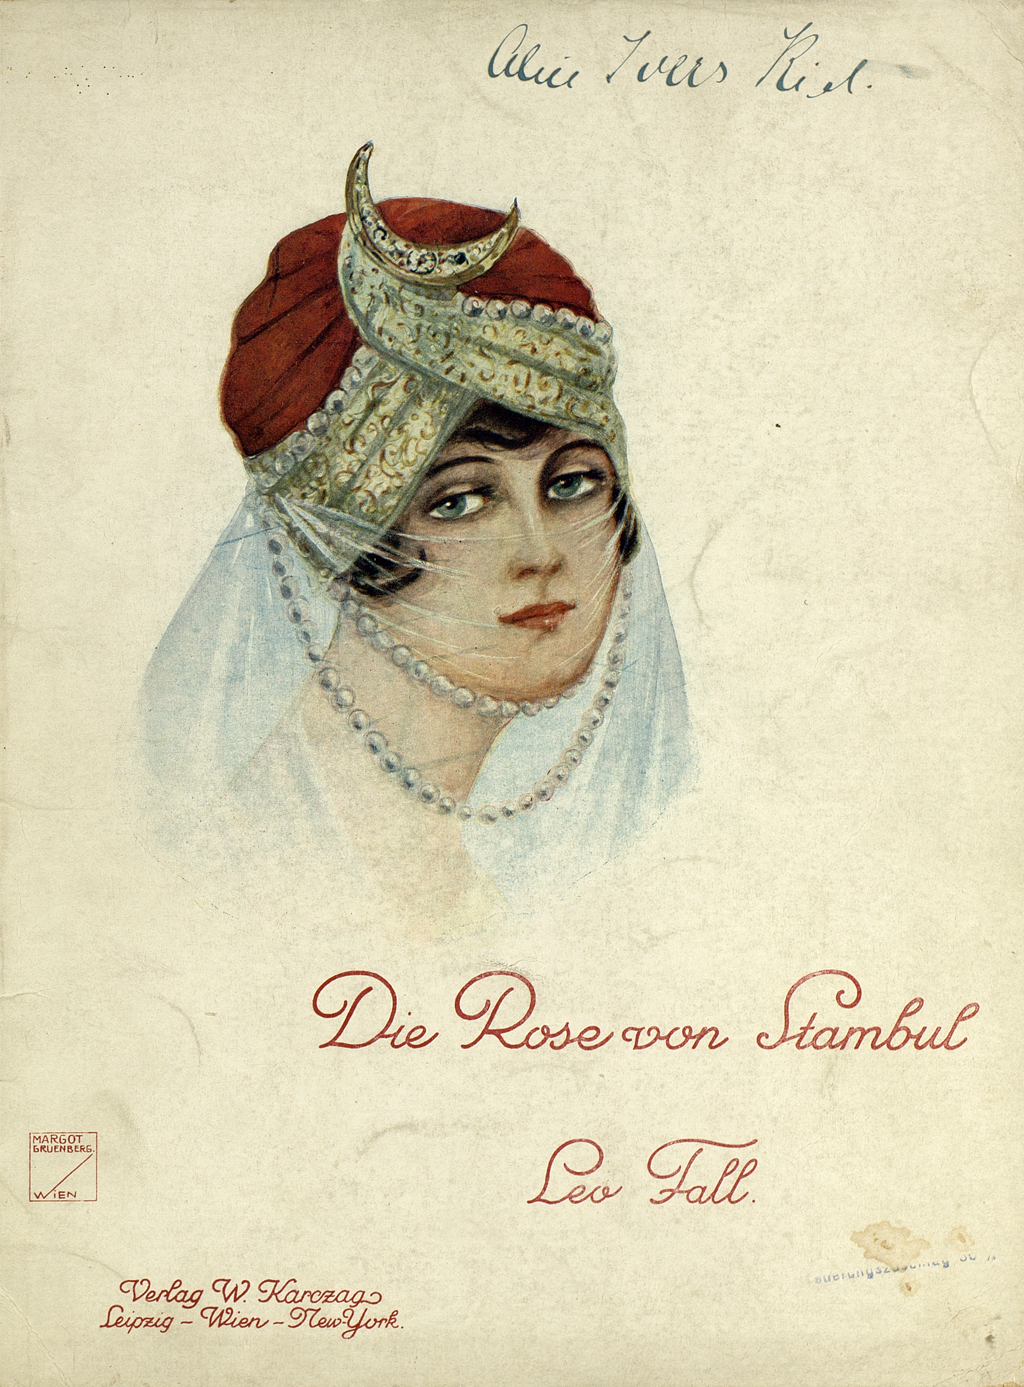 Zu sehen ist das Titelblatt des Klavierauszugs zur Operette "Die Rose von Stambul" mit dem Bildnis eines türkischen Mädchens mit Turban und Gesichtsschleier.